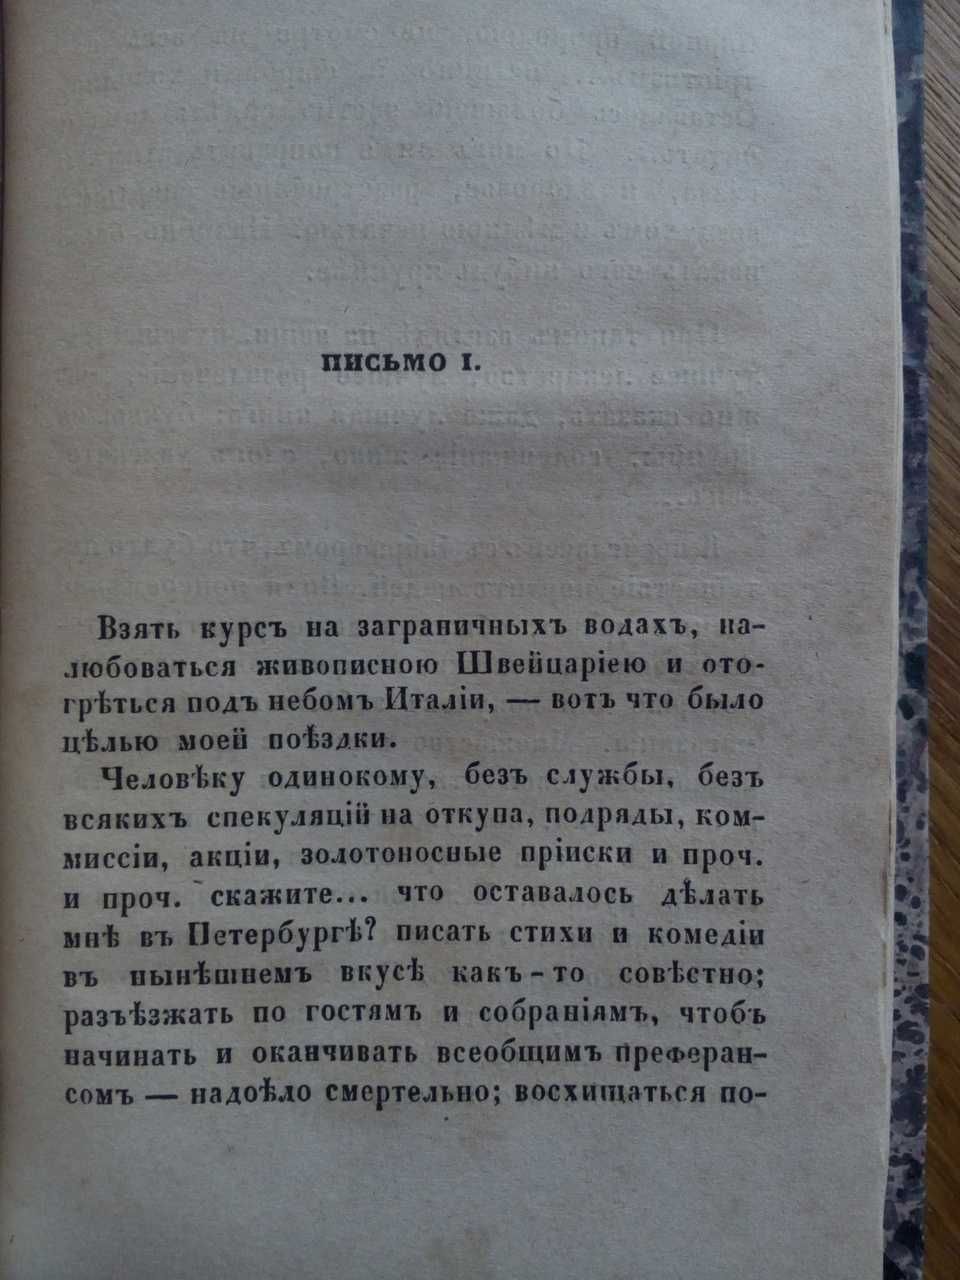 Хмельницкий 1849 г. Комплект! Три тома